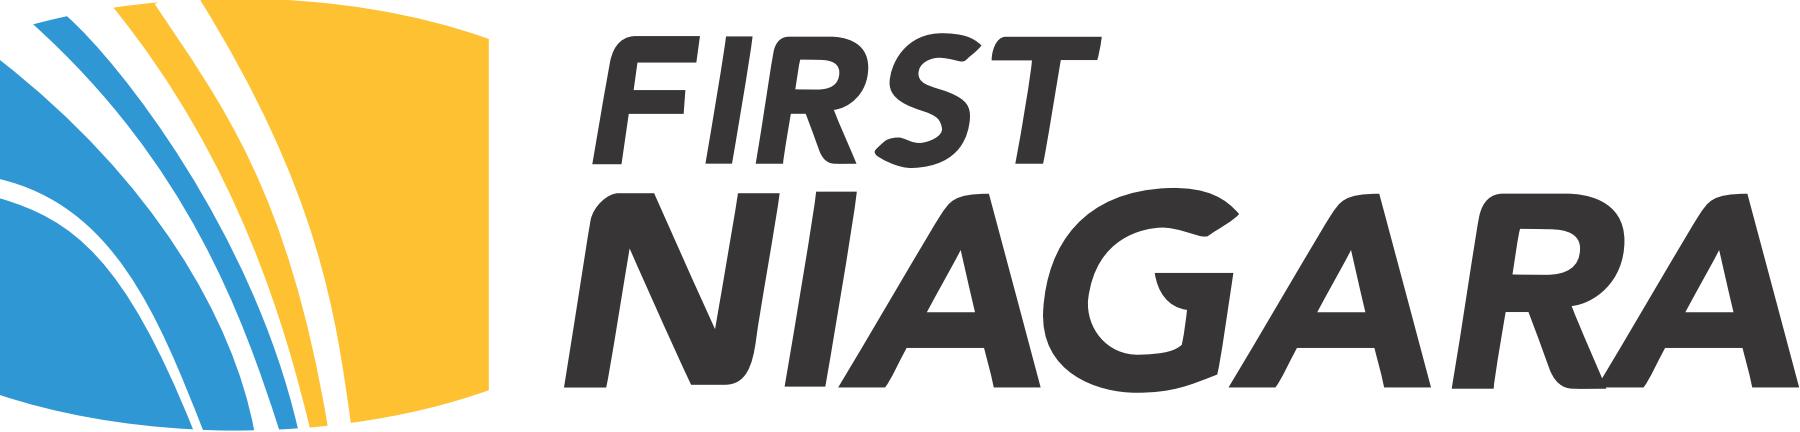 first niagara bank logo